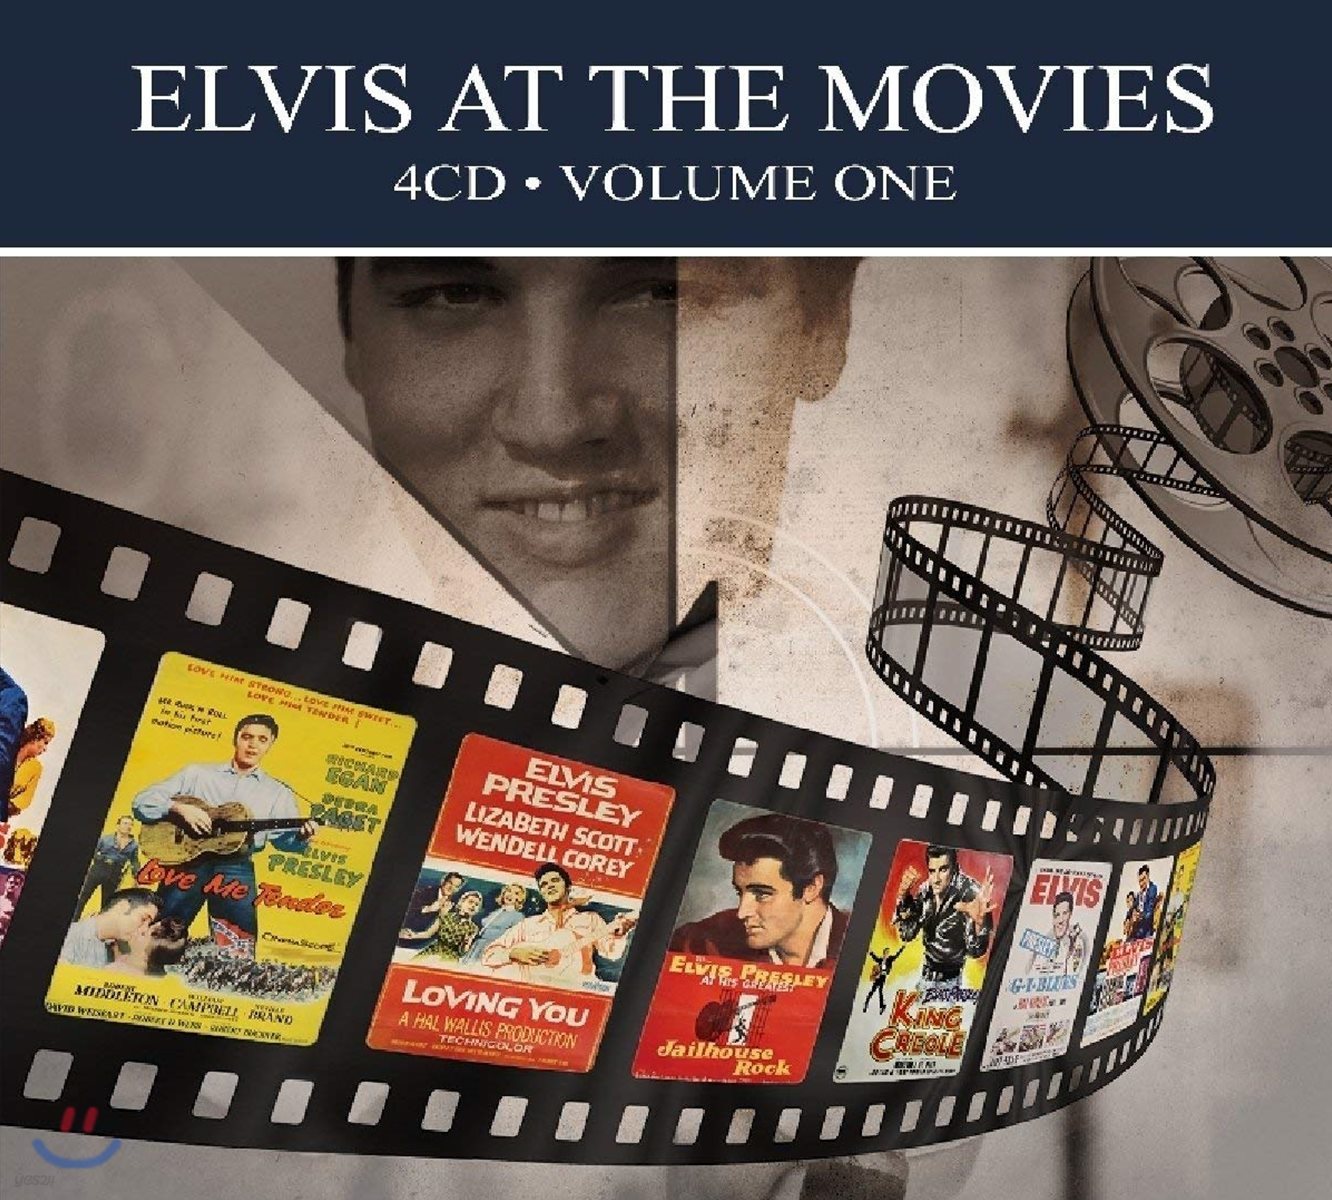 Elvis Presley - Elvis at the Movies Vol. 1 영화 속 엘비스 프레슬리 음악 모음집